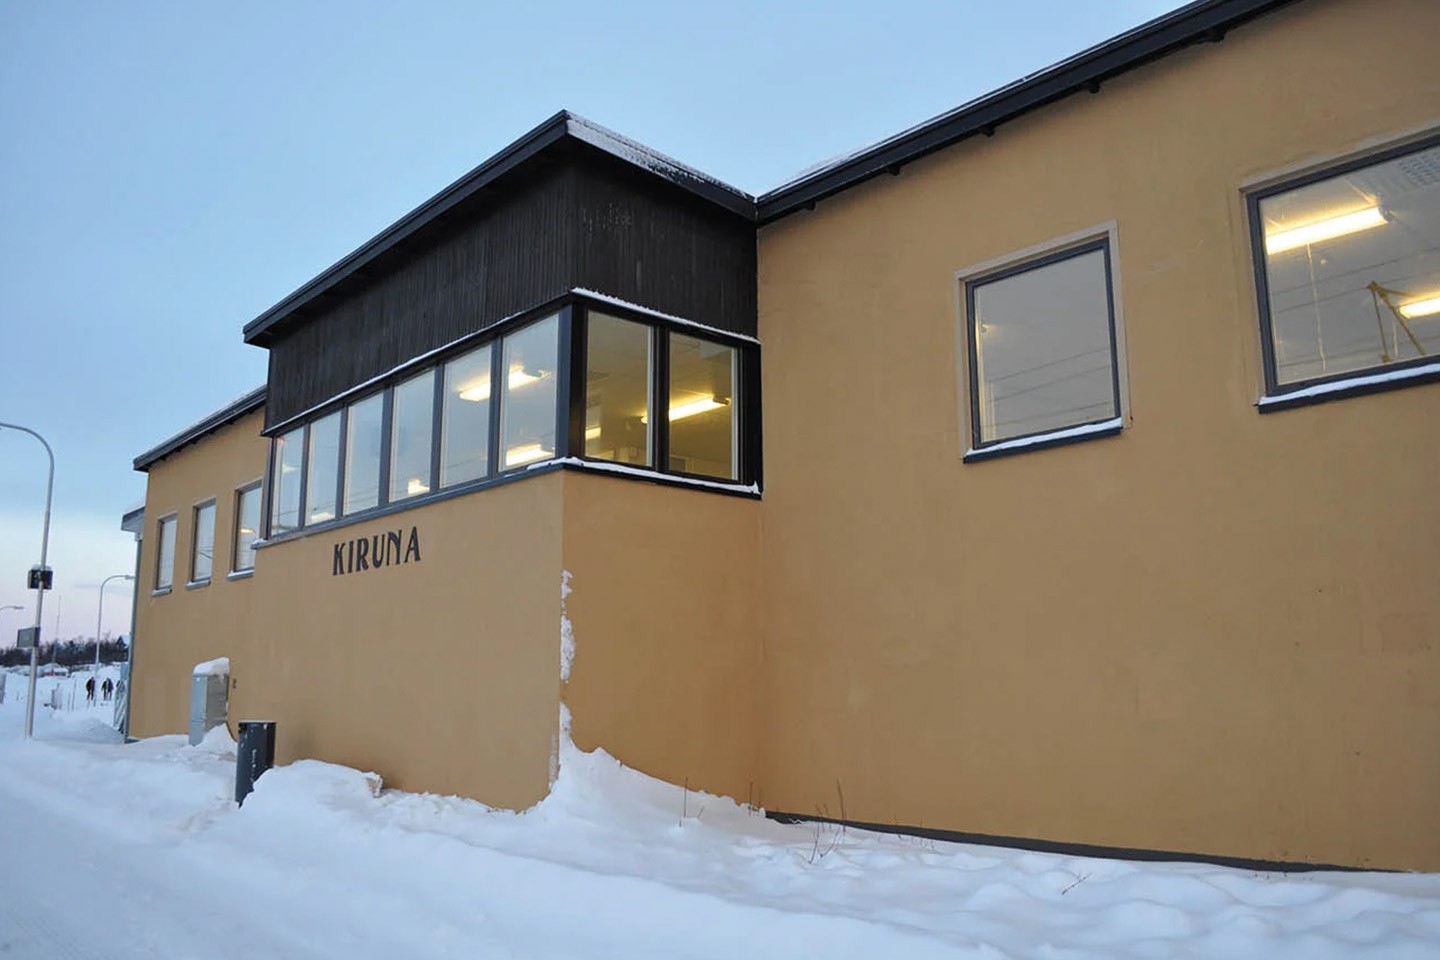 Afbeelding van Kirunalapland